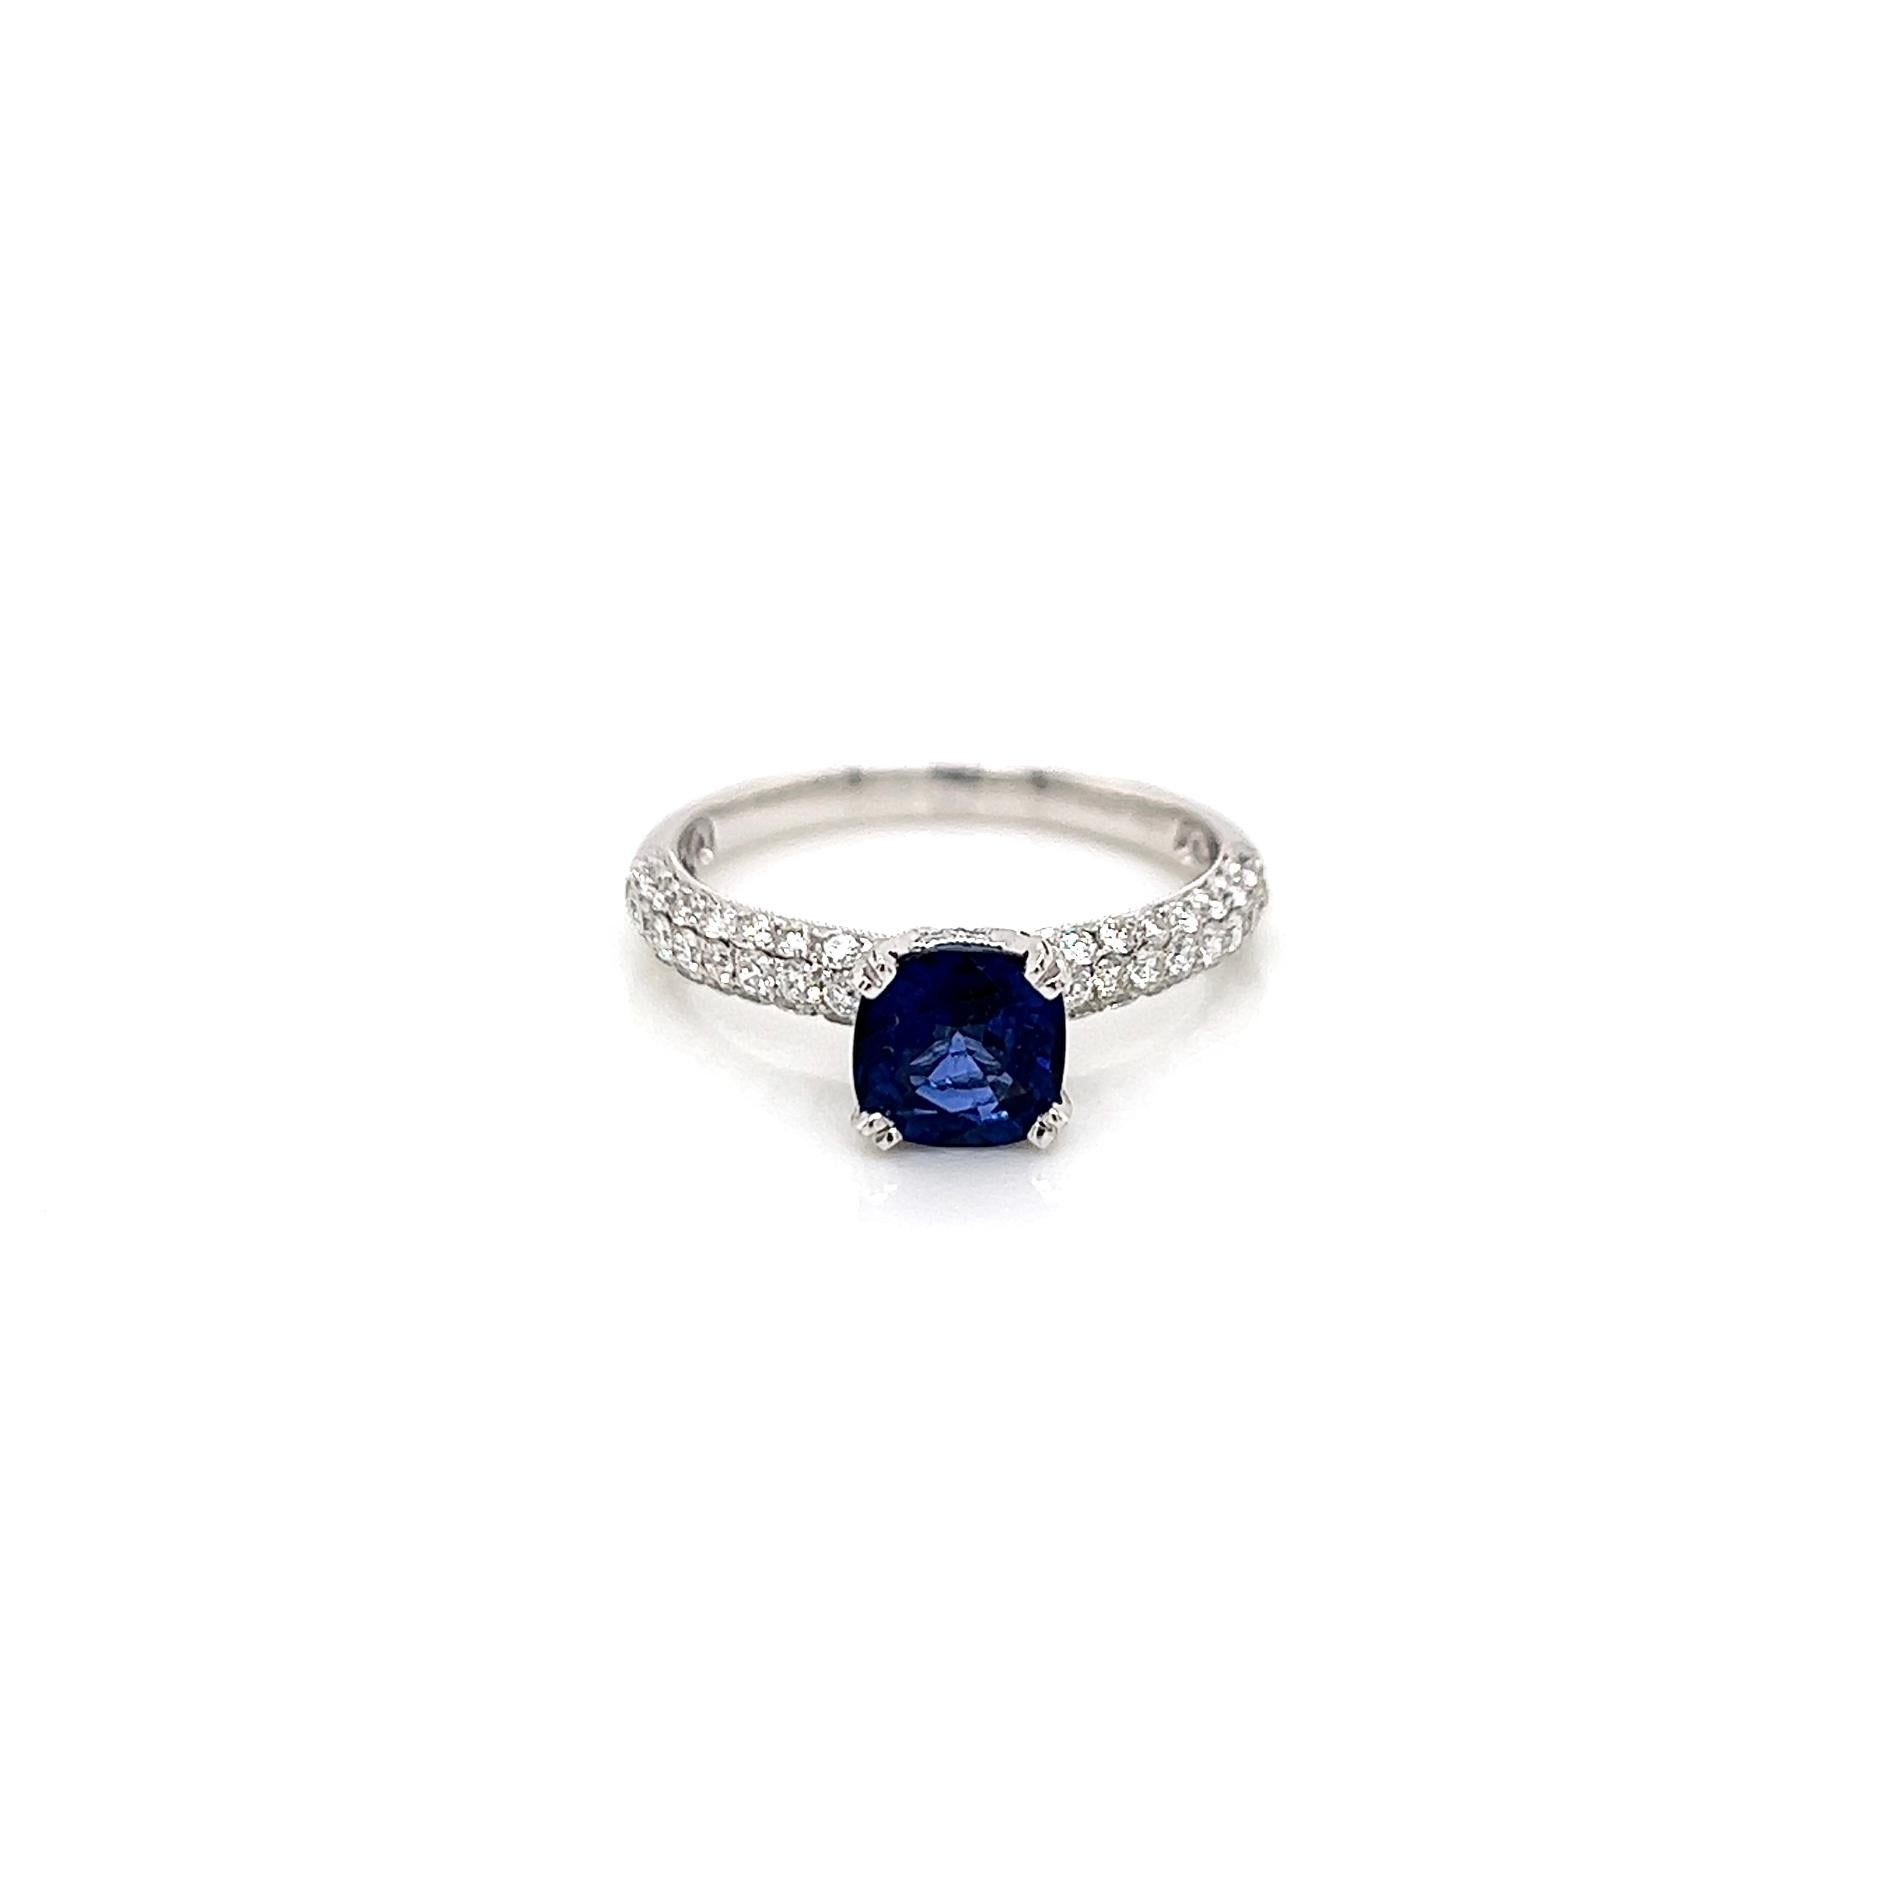 2.bague de fiançailles en diamant saphir de 05 carats totaux

-Type de métal : or blanc 18K
-saphir bleu en forme de coussin de 1,25 carat
-diamants latéraux ronds de 0,80 carat 
-Taille 7.0
Redimensionnable moyennant des frais